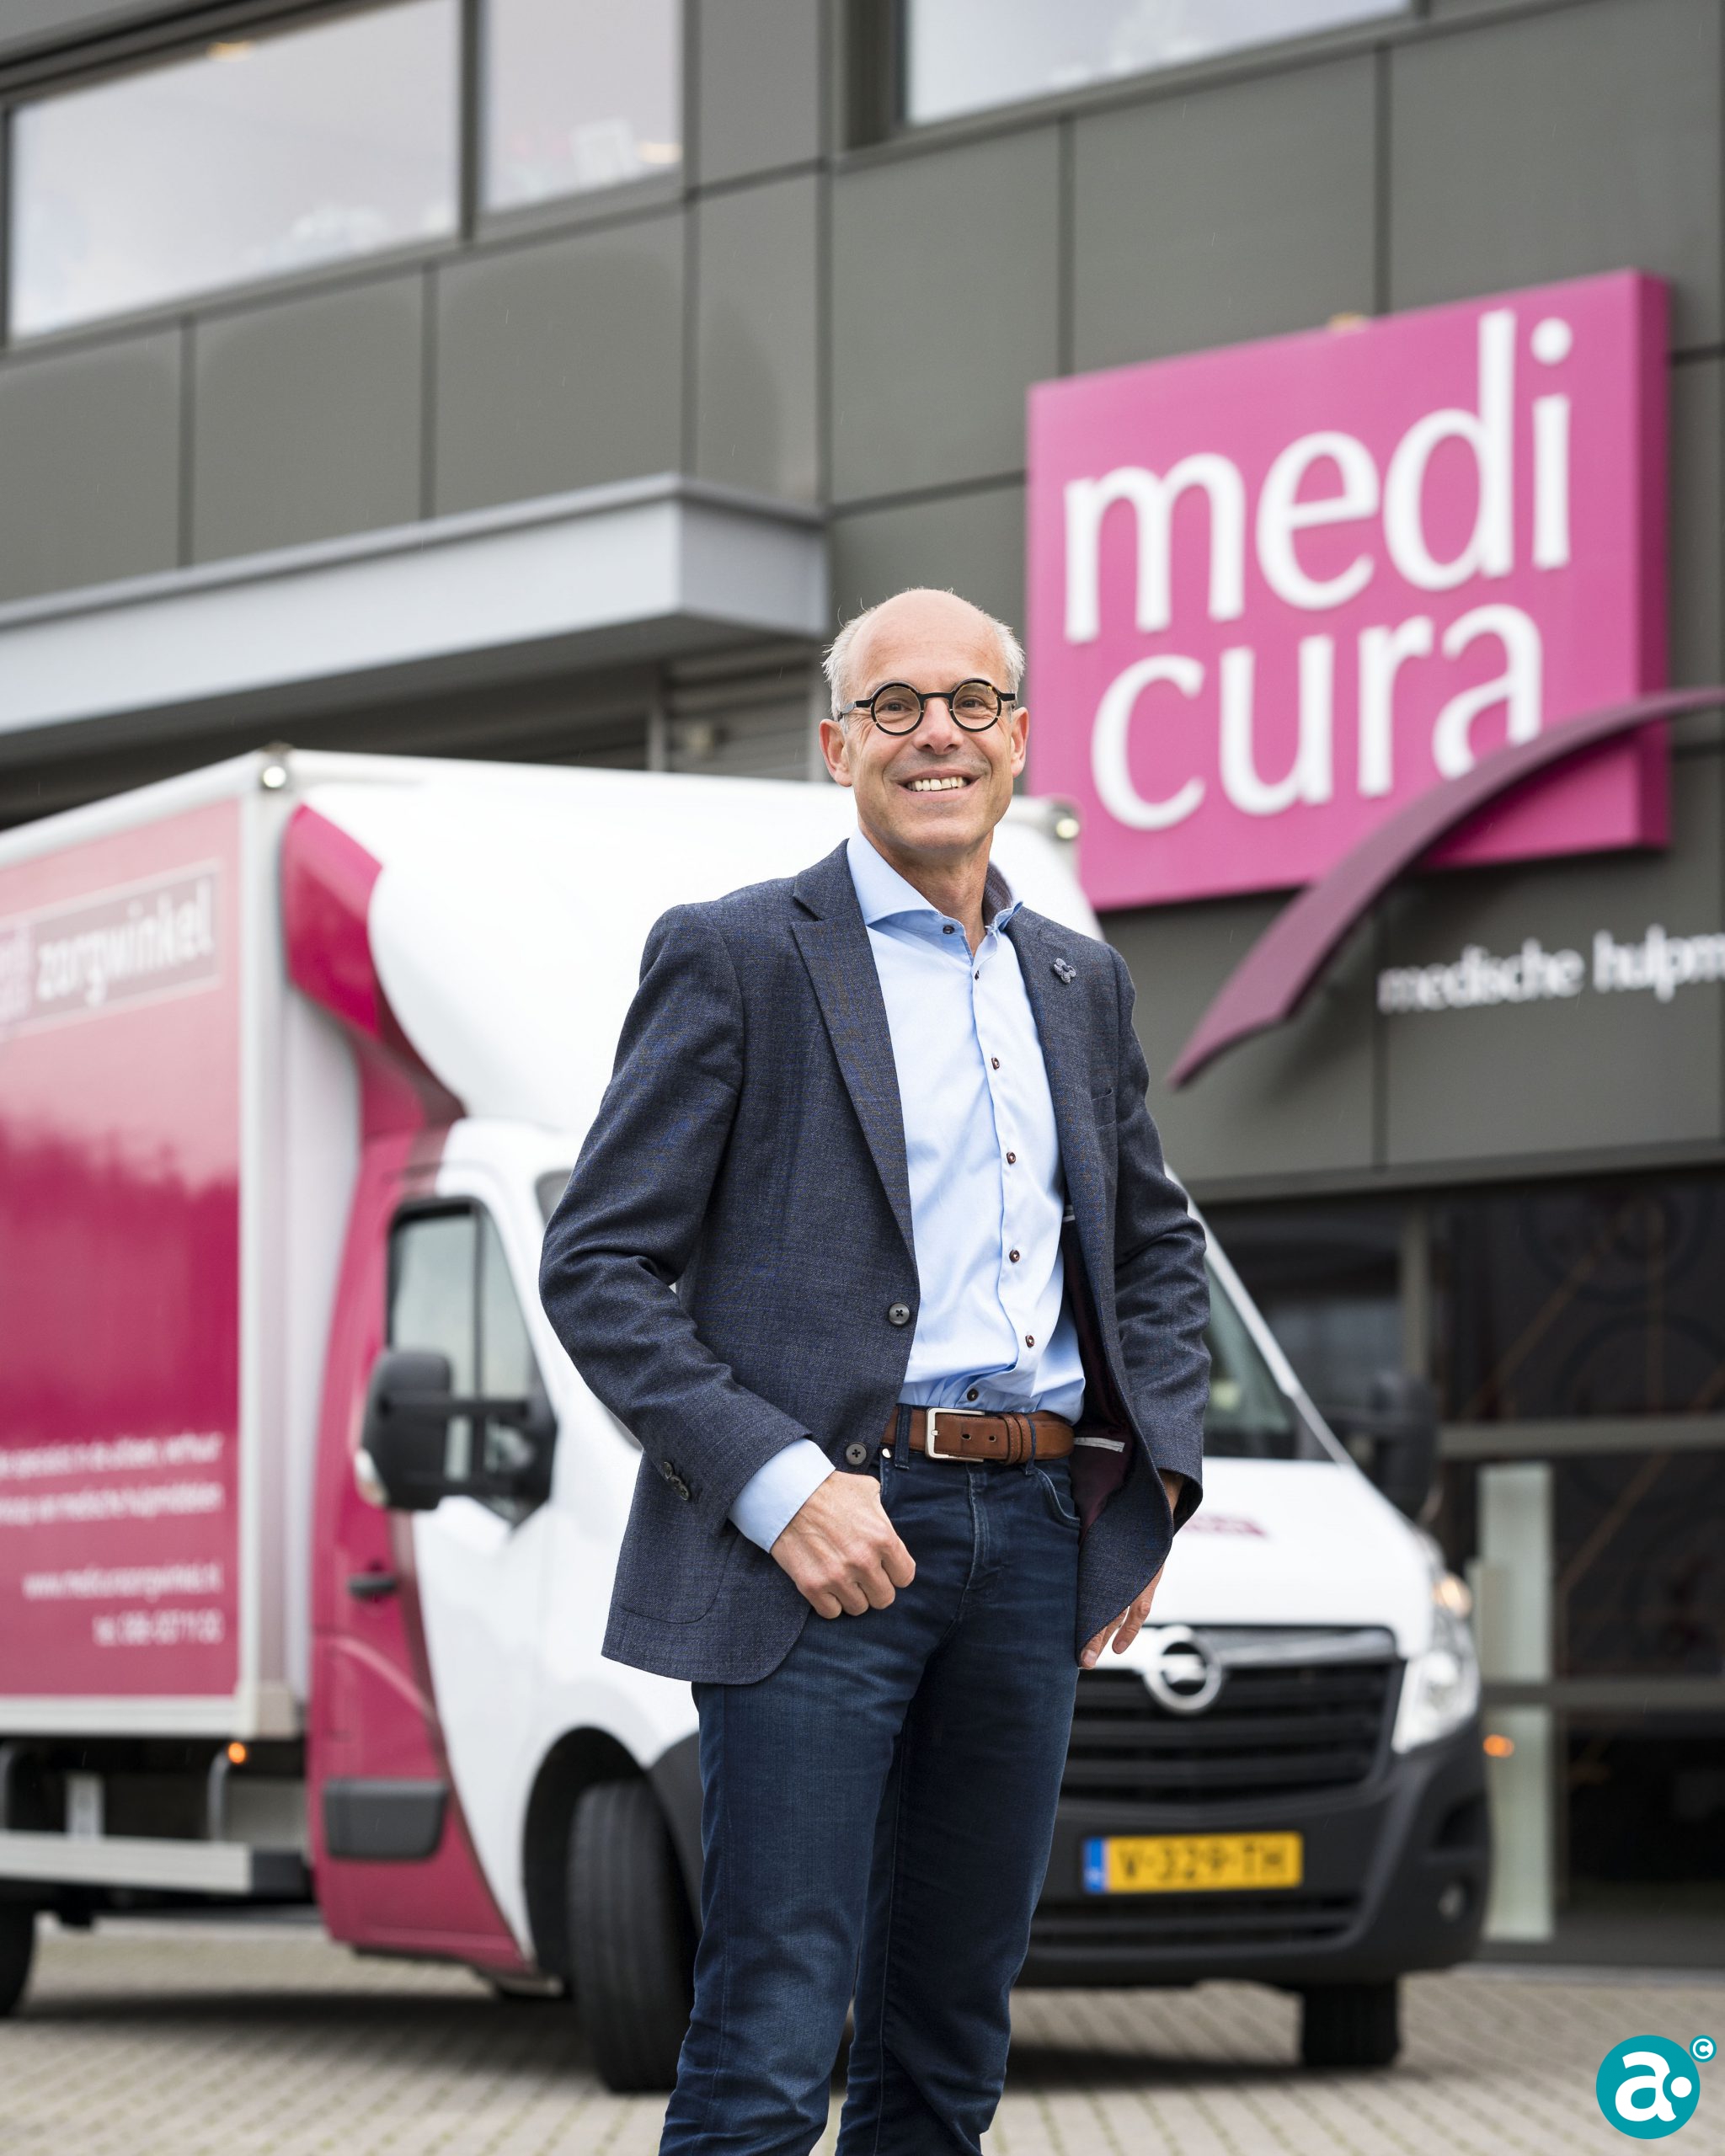 Overtekenen sjaal garage Medicura: 'In 2025 lenen we onze medische hulpmiddelen uit door heel  Nederland' - MLA Stories